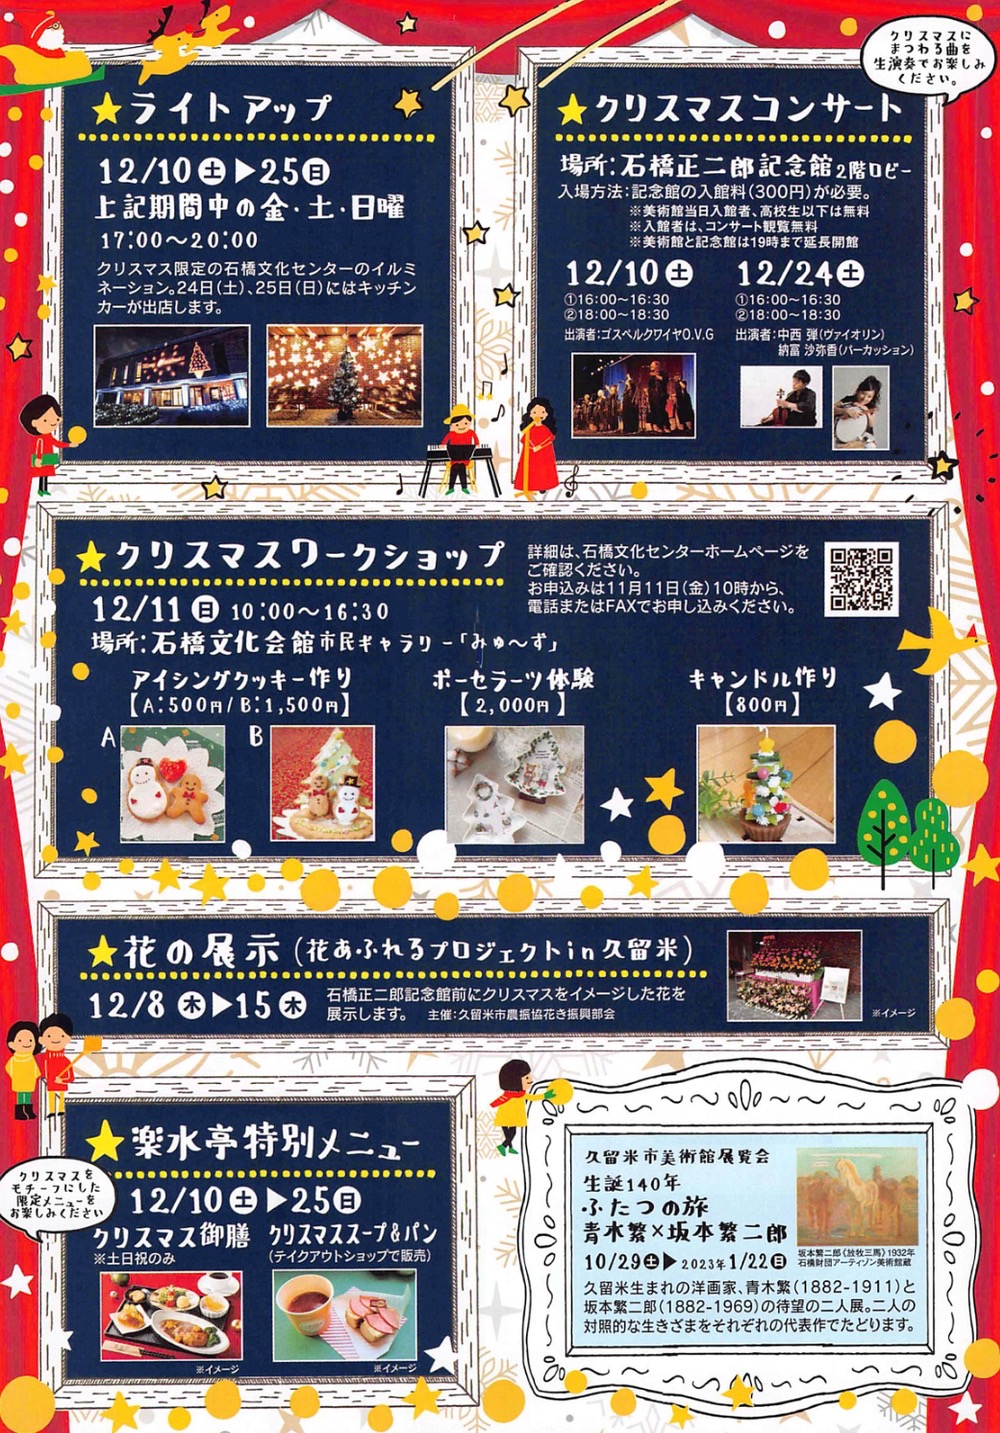 石橋文化センター「ミュージアムクリスマス2022」イベント内容